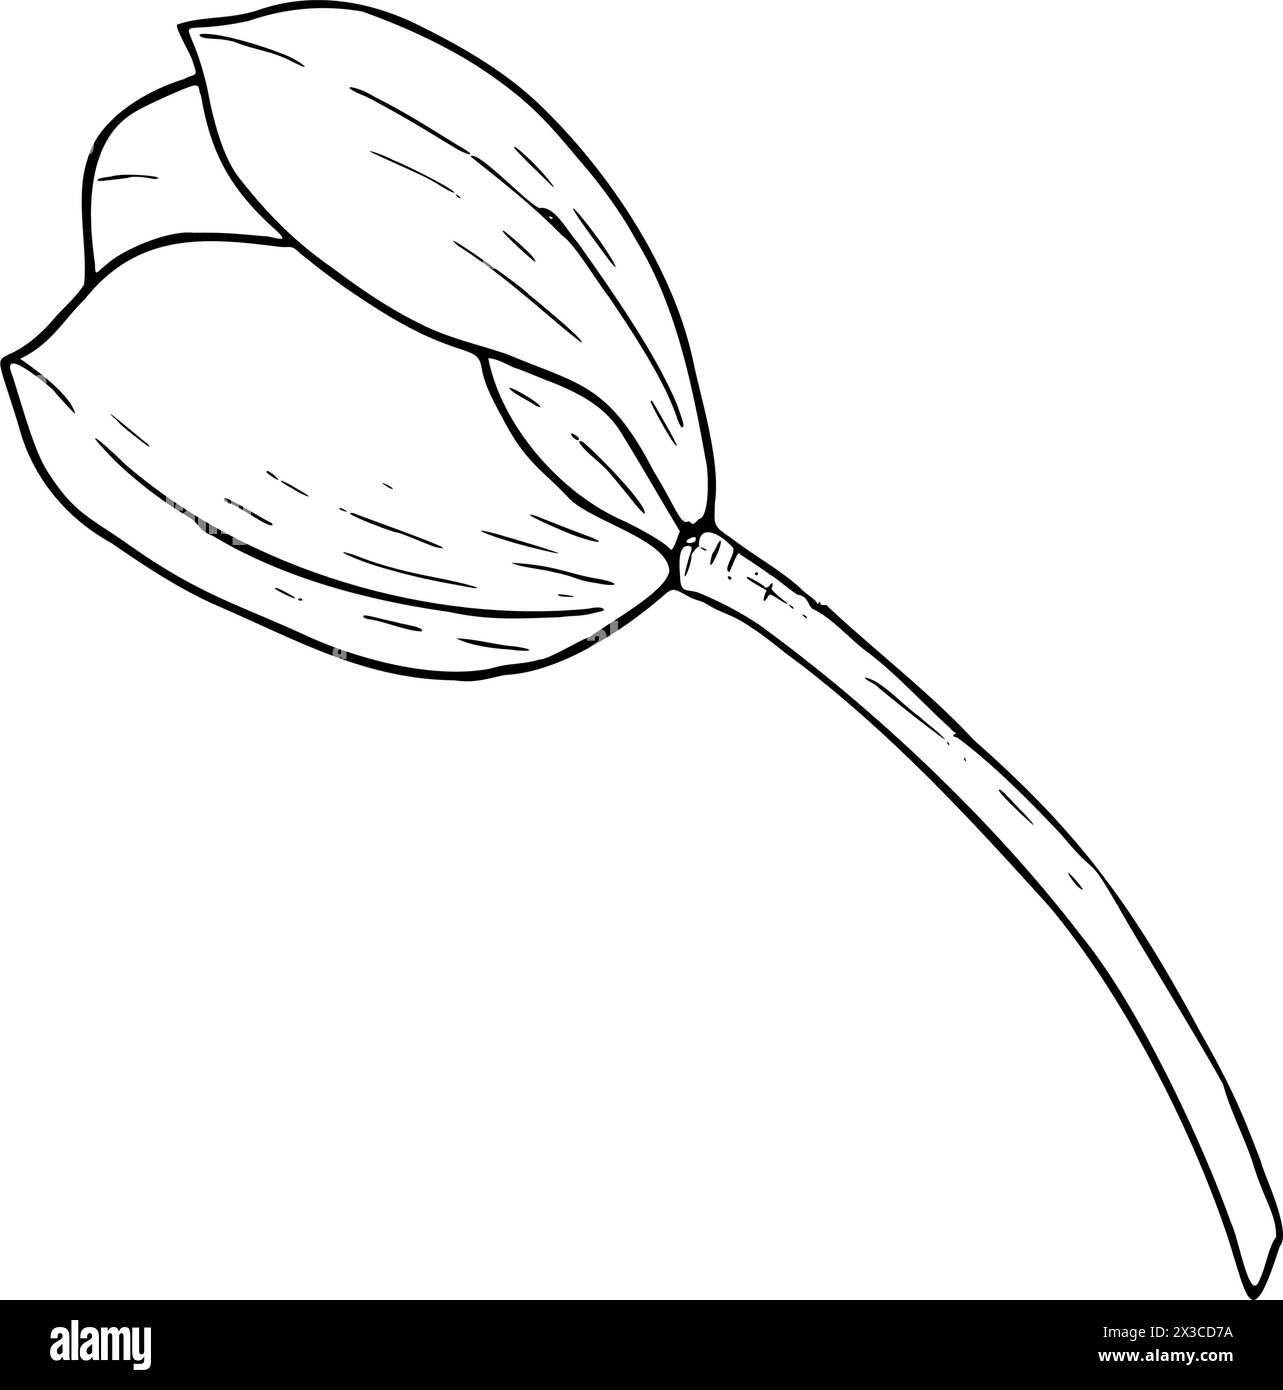 Illustration vectorielle de fleurs de tulipe. Dessin graphique de contour noir de tête d'ampoule. Carte de voeux en fleurs botaniques. Contour de ligne d'encre contour de silhouette Illustration de Vecteur